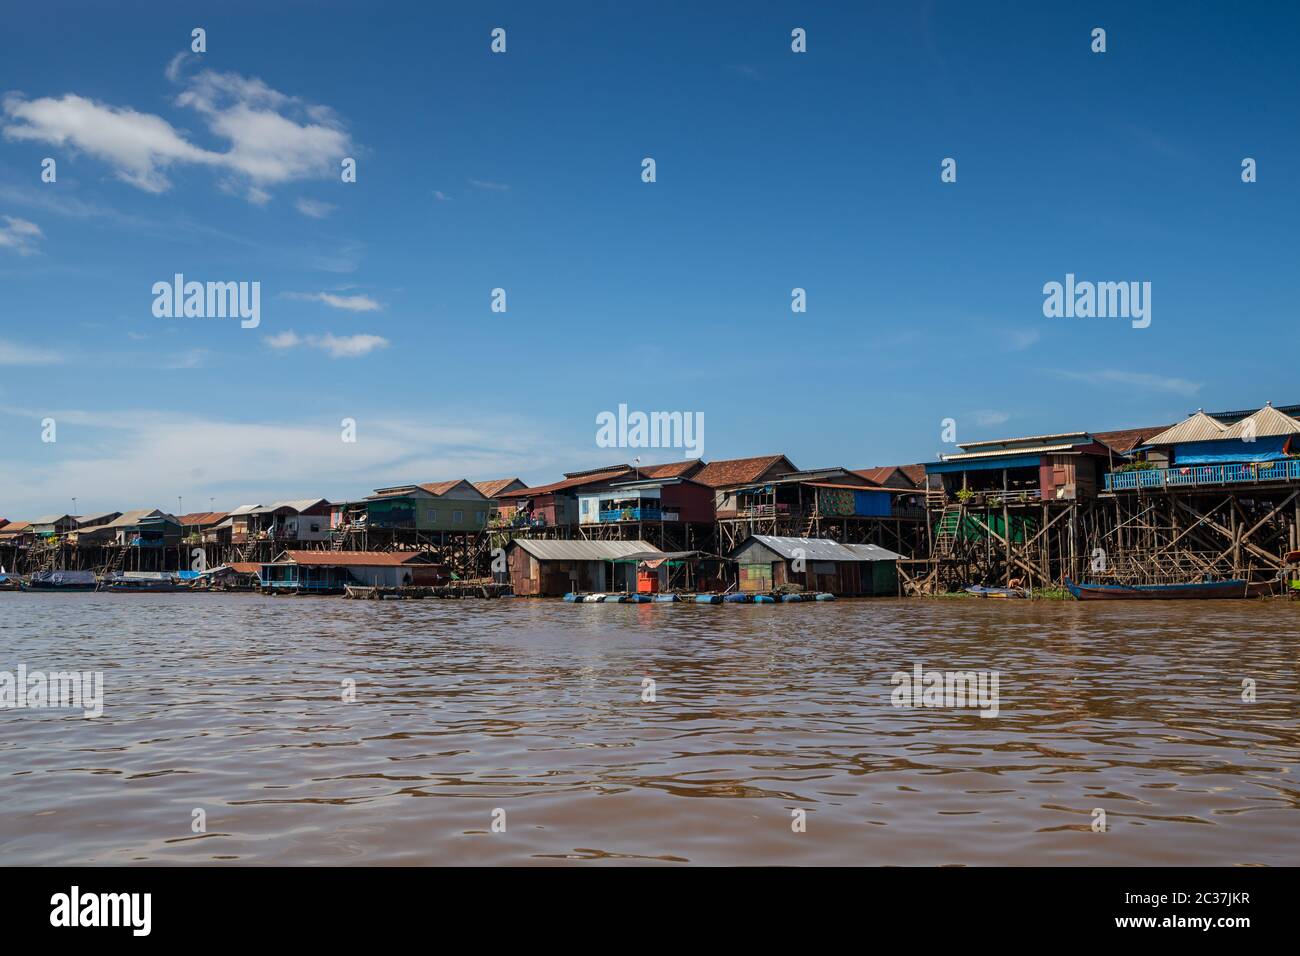 Village flottant de Kompong Khleang au lac Tonle SAP Cambodge Banque D'Images